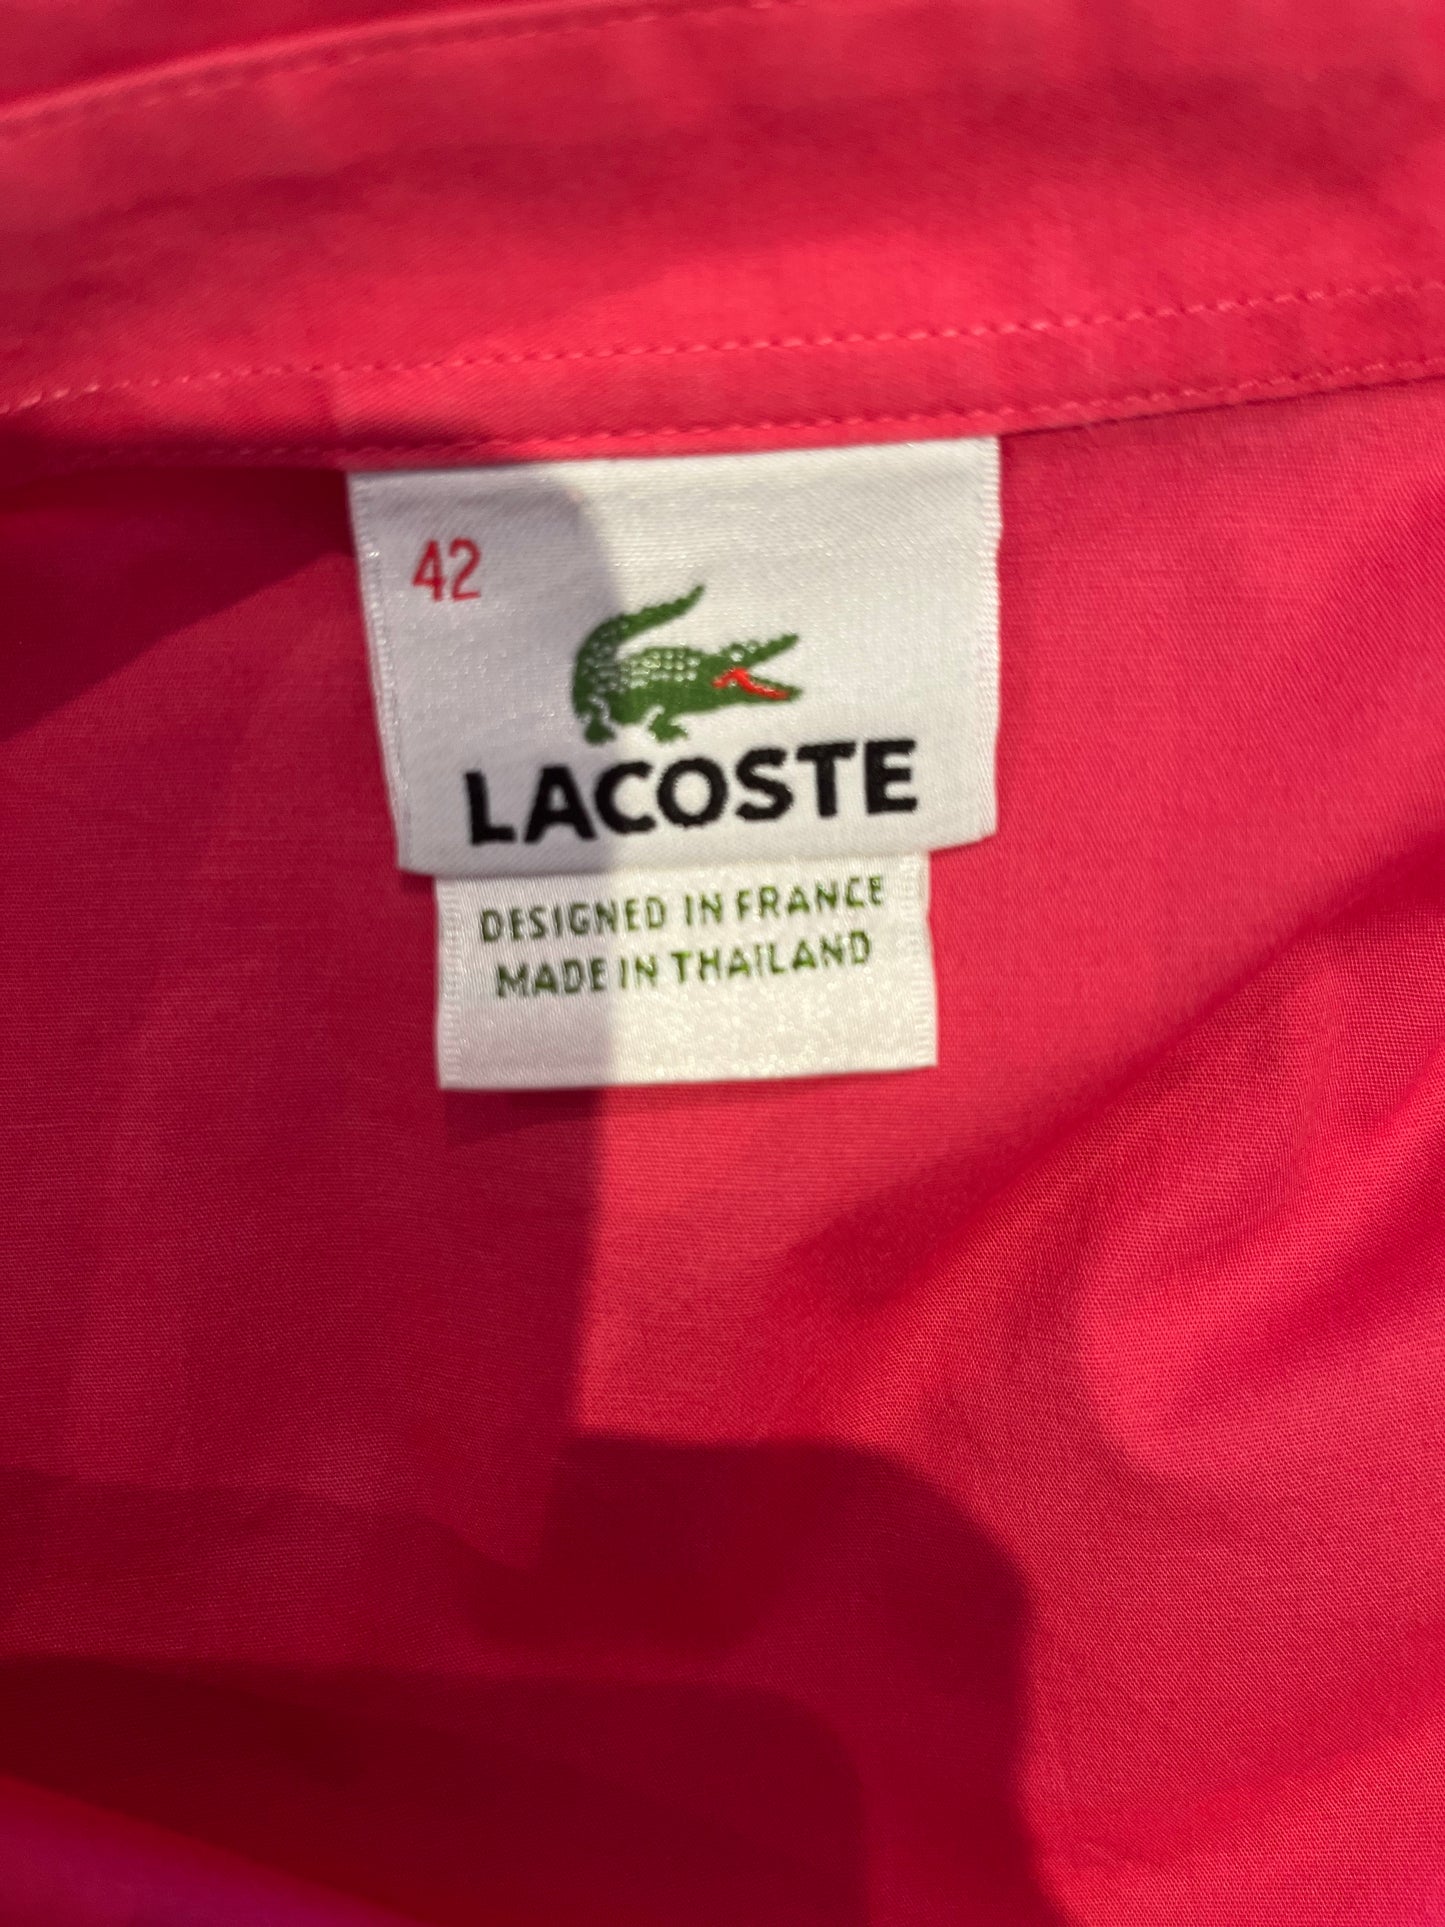 Lacoste Women’s 100% Cotton Pink Shirt Slim Fit Size 42